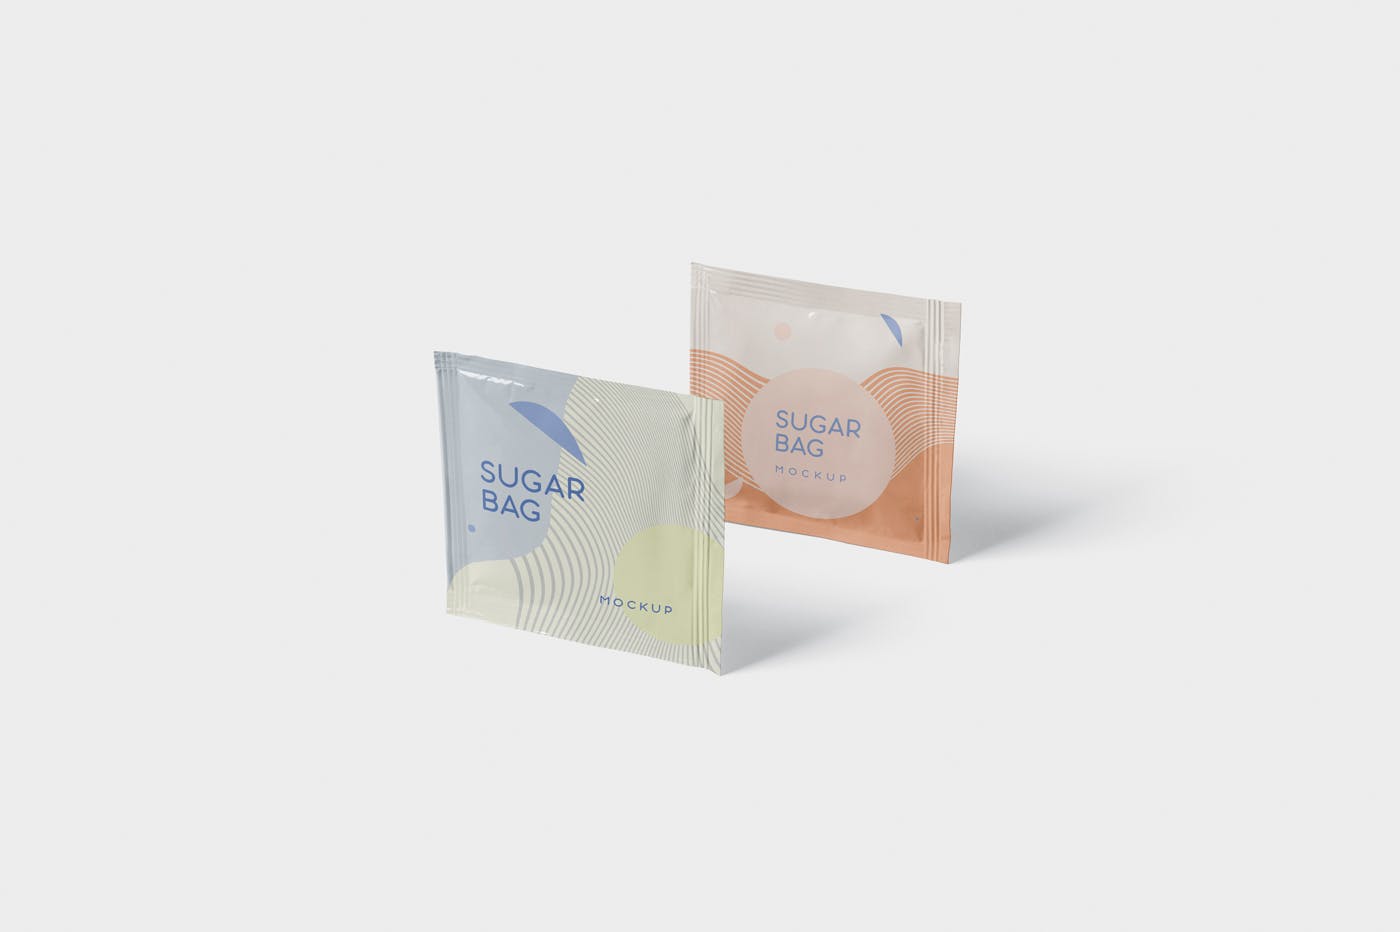 盐袋糖袋包装设计效果图第一素材精选 Salt OR Sugar Bag Mockup – Square Shaped插图(3)